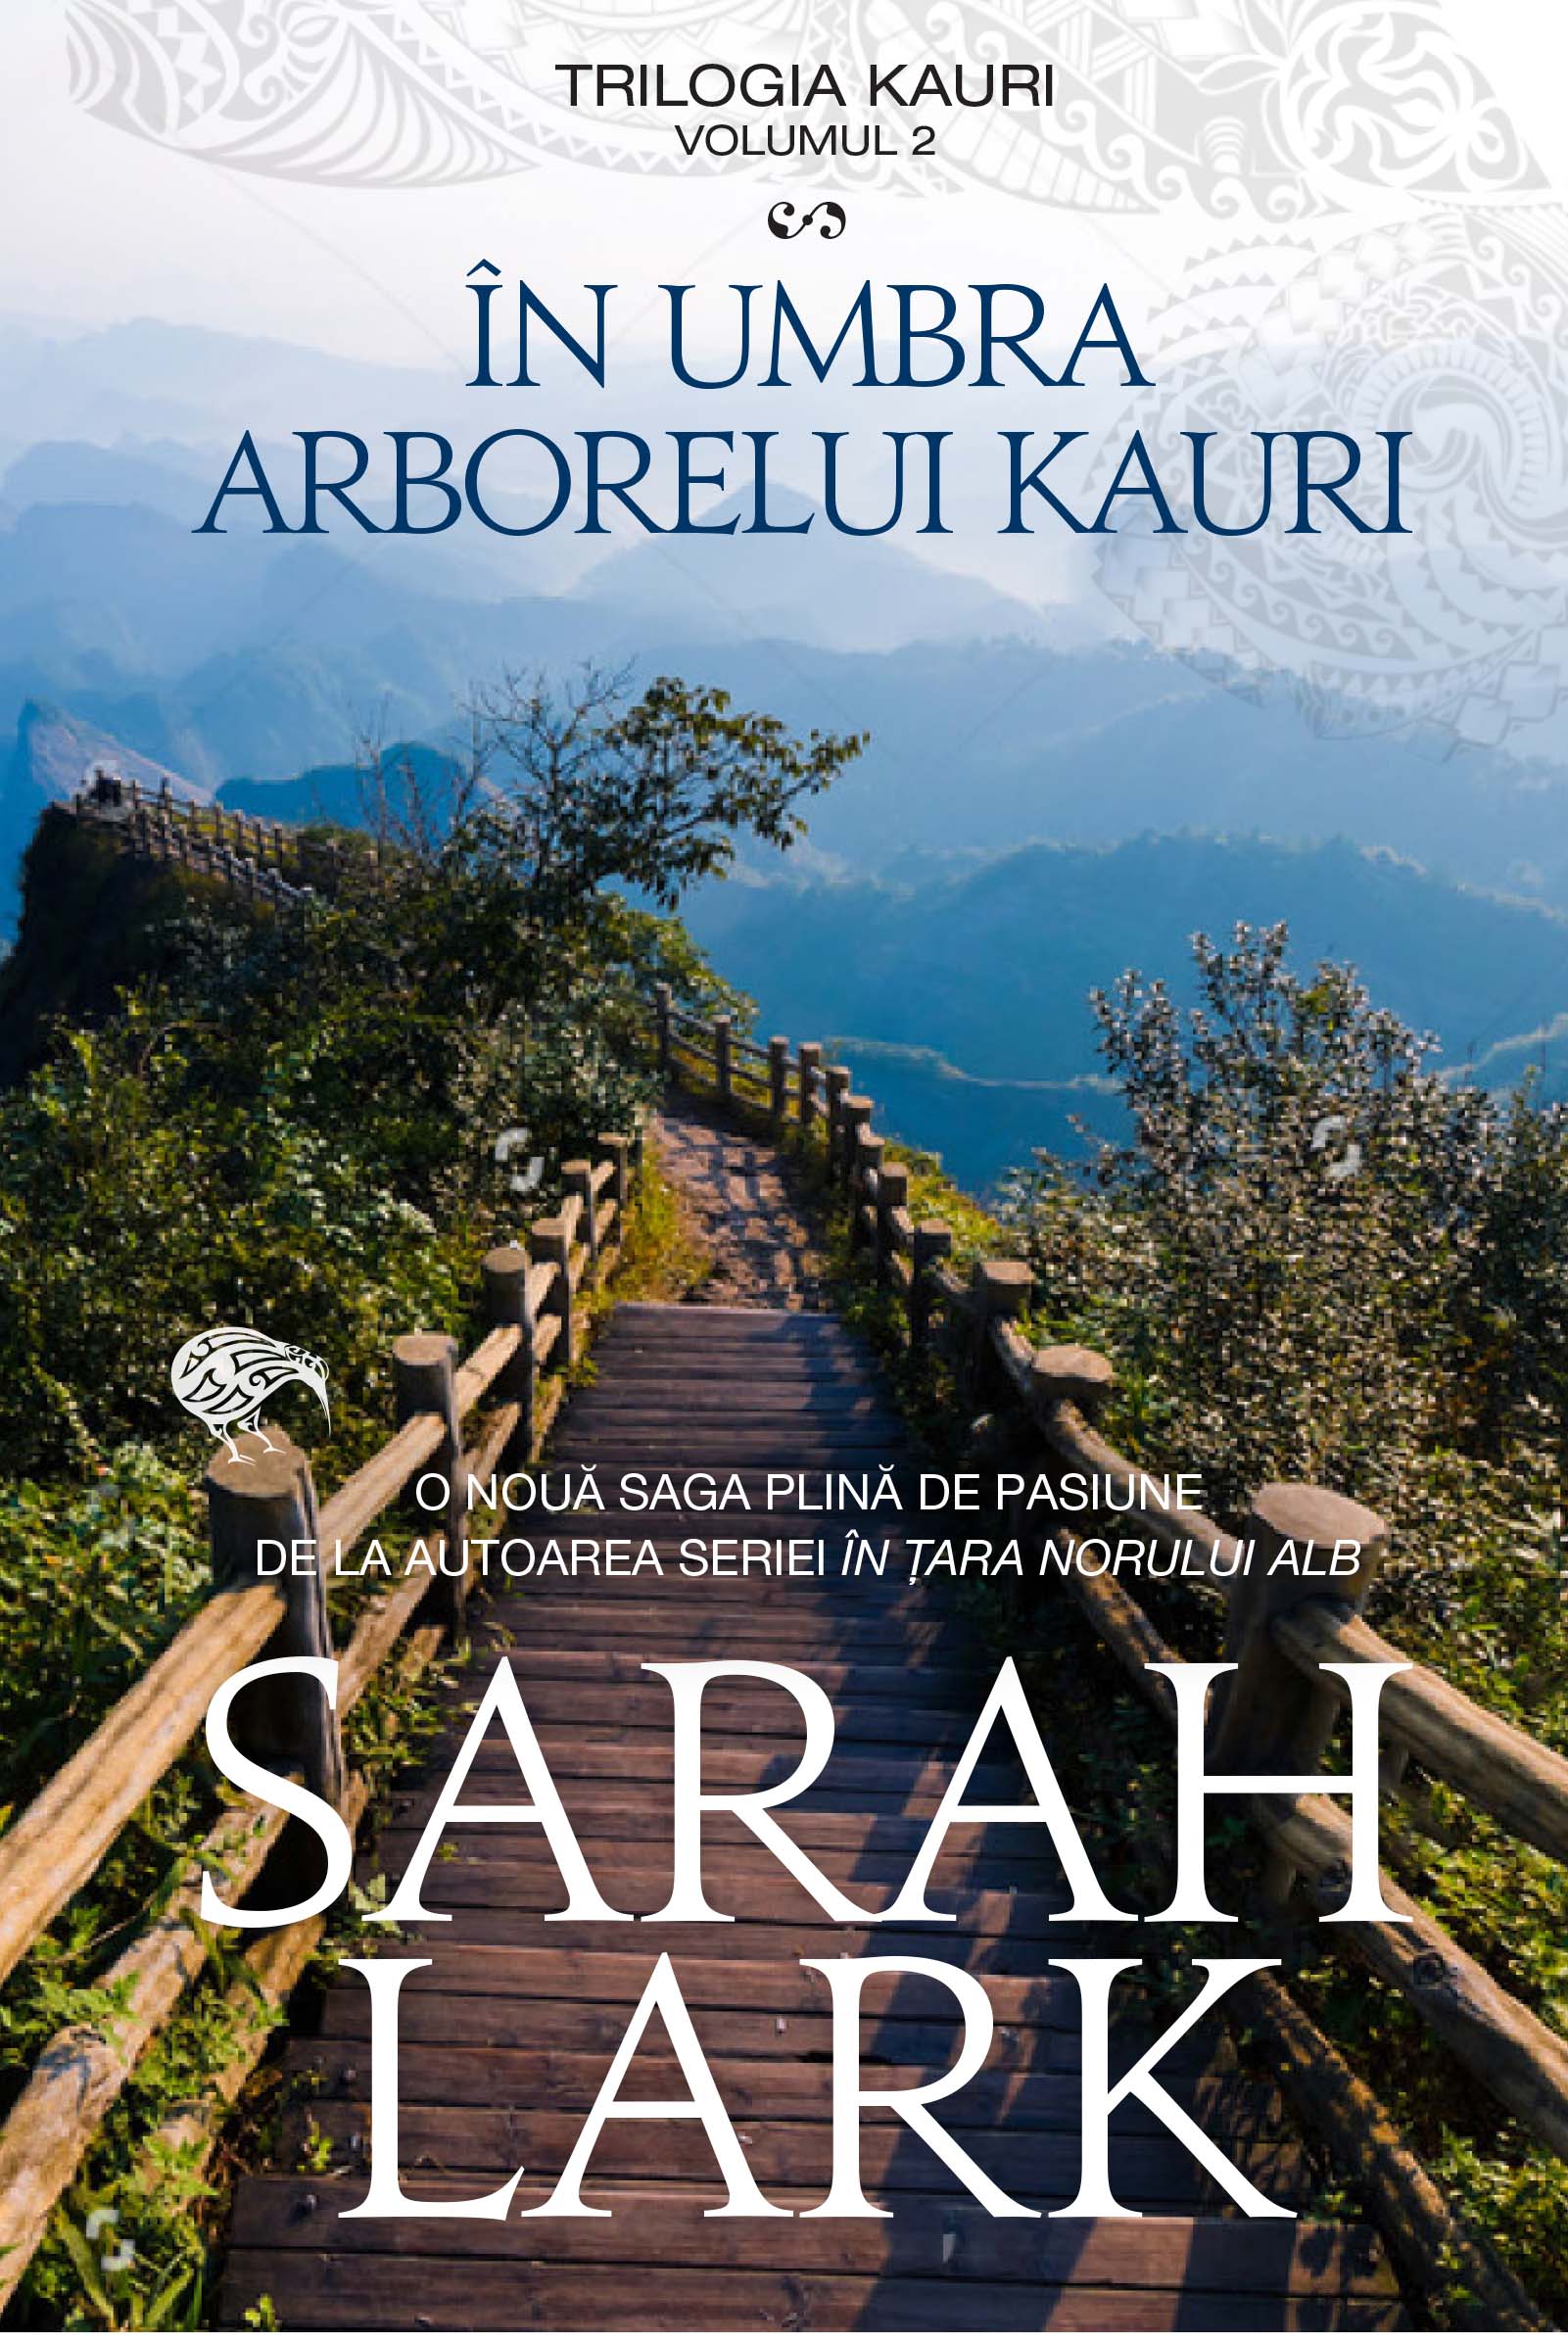 In umbra arborelui Kauri (trilogia Kauri, vol. 2) arborelui